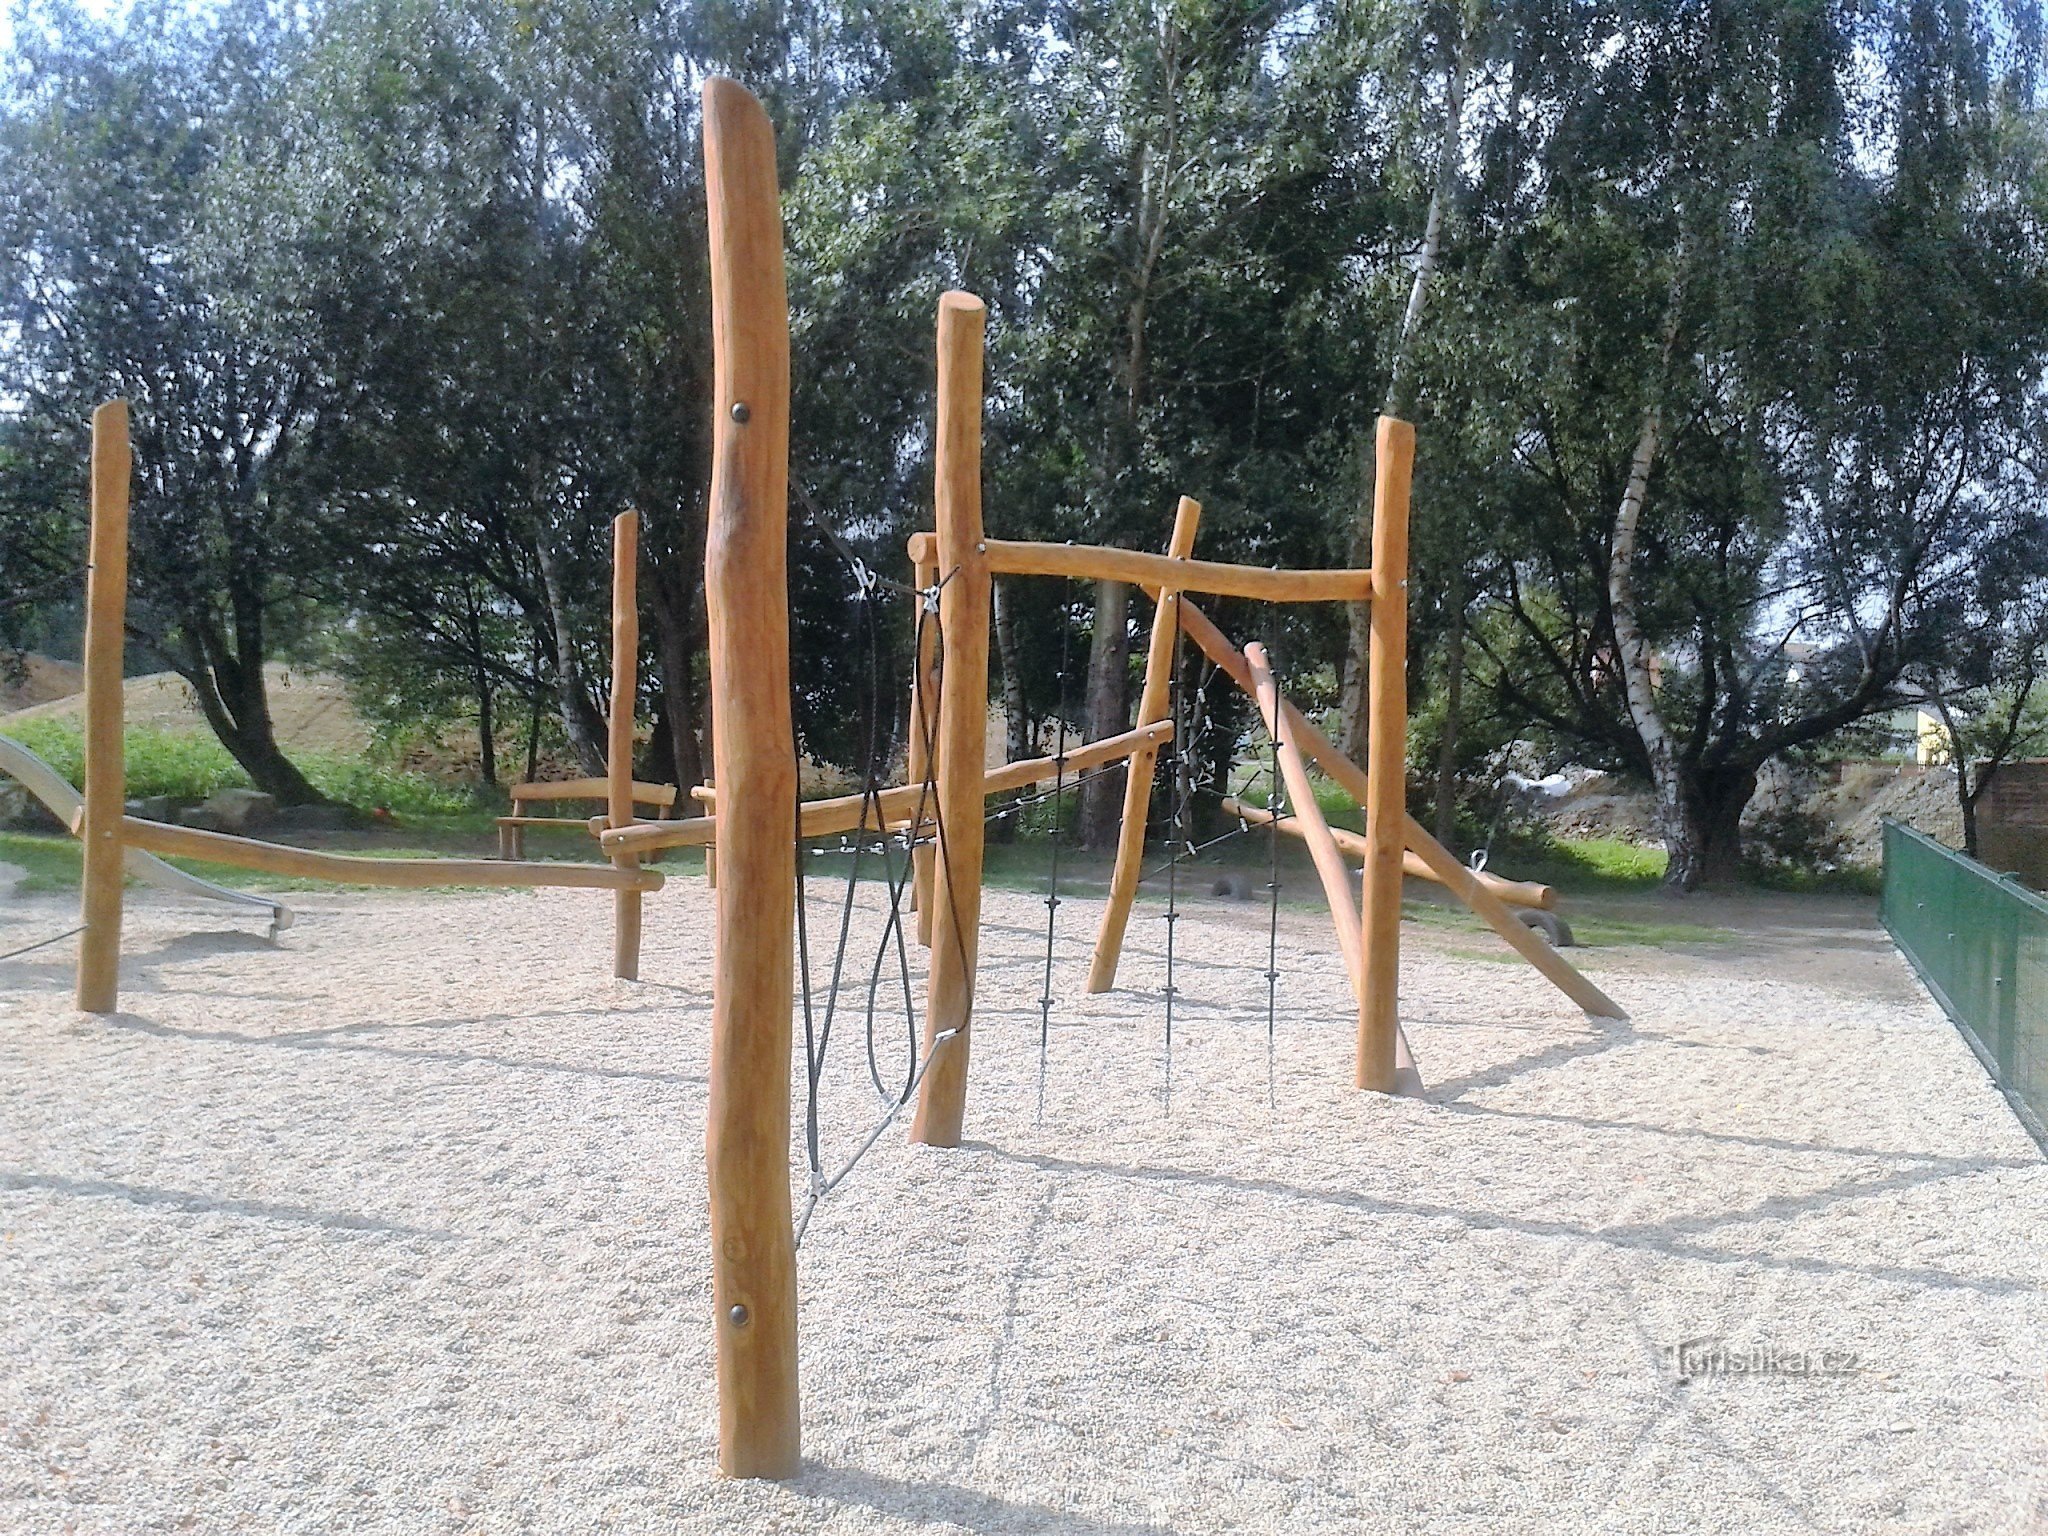 Zábřeh - Parco giochi Oborník (nuovo per tutte le categorie di bambini)